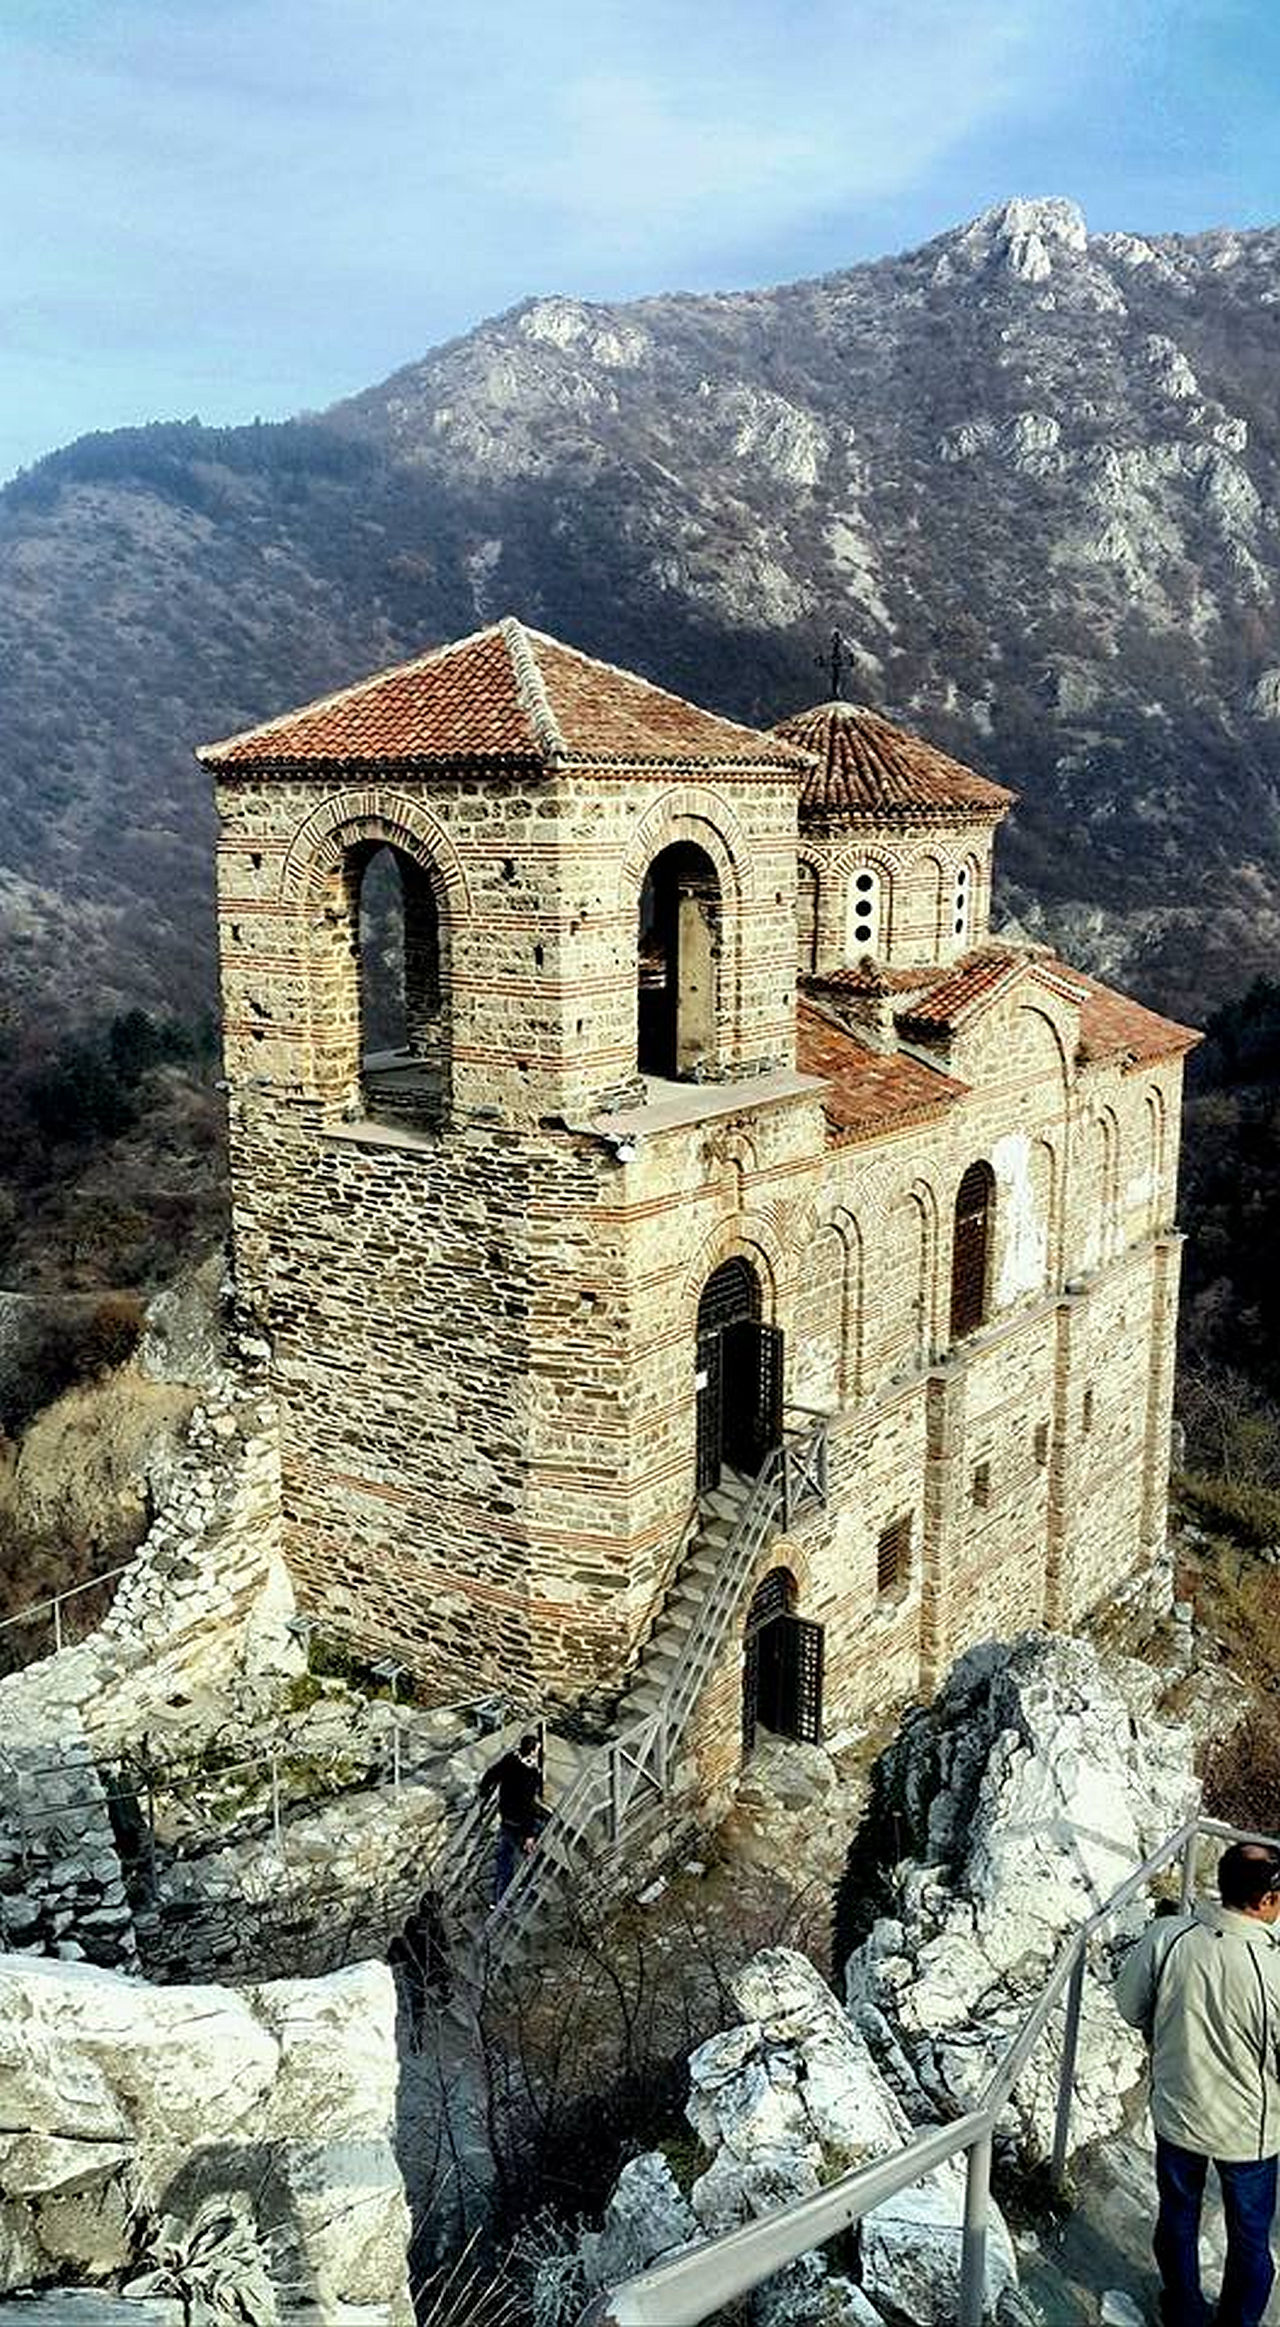 <p>Високо в планината като страж стои една от най-красивите крепости в България - Асеновата крепост</p>